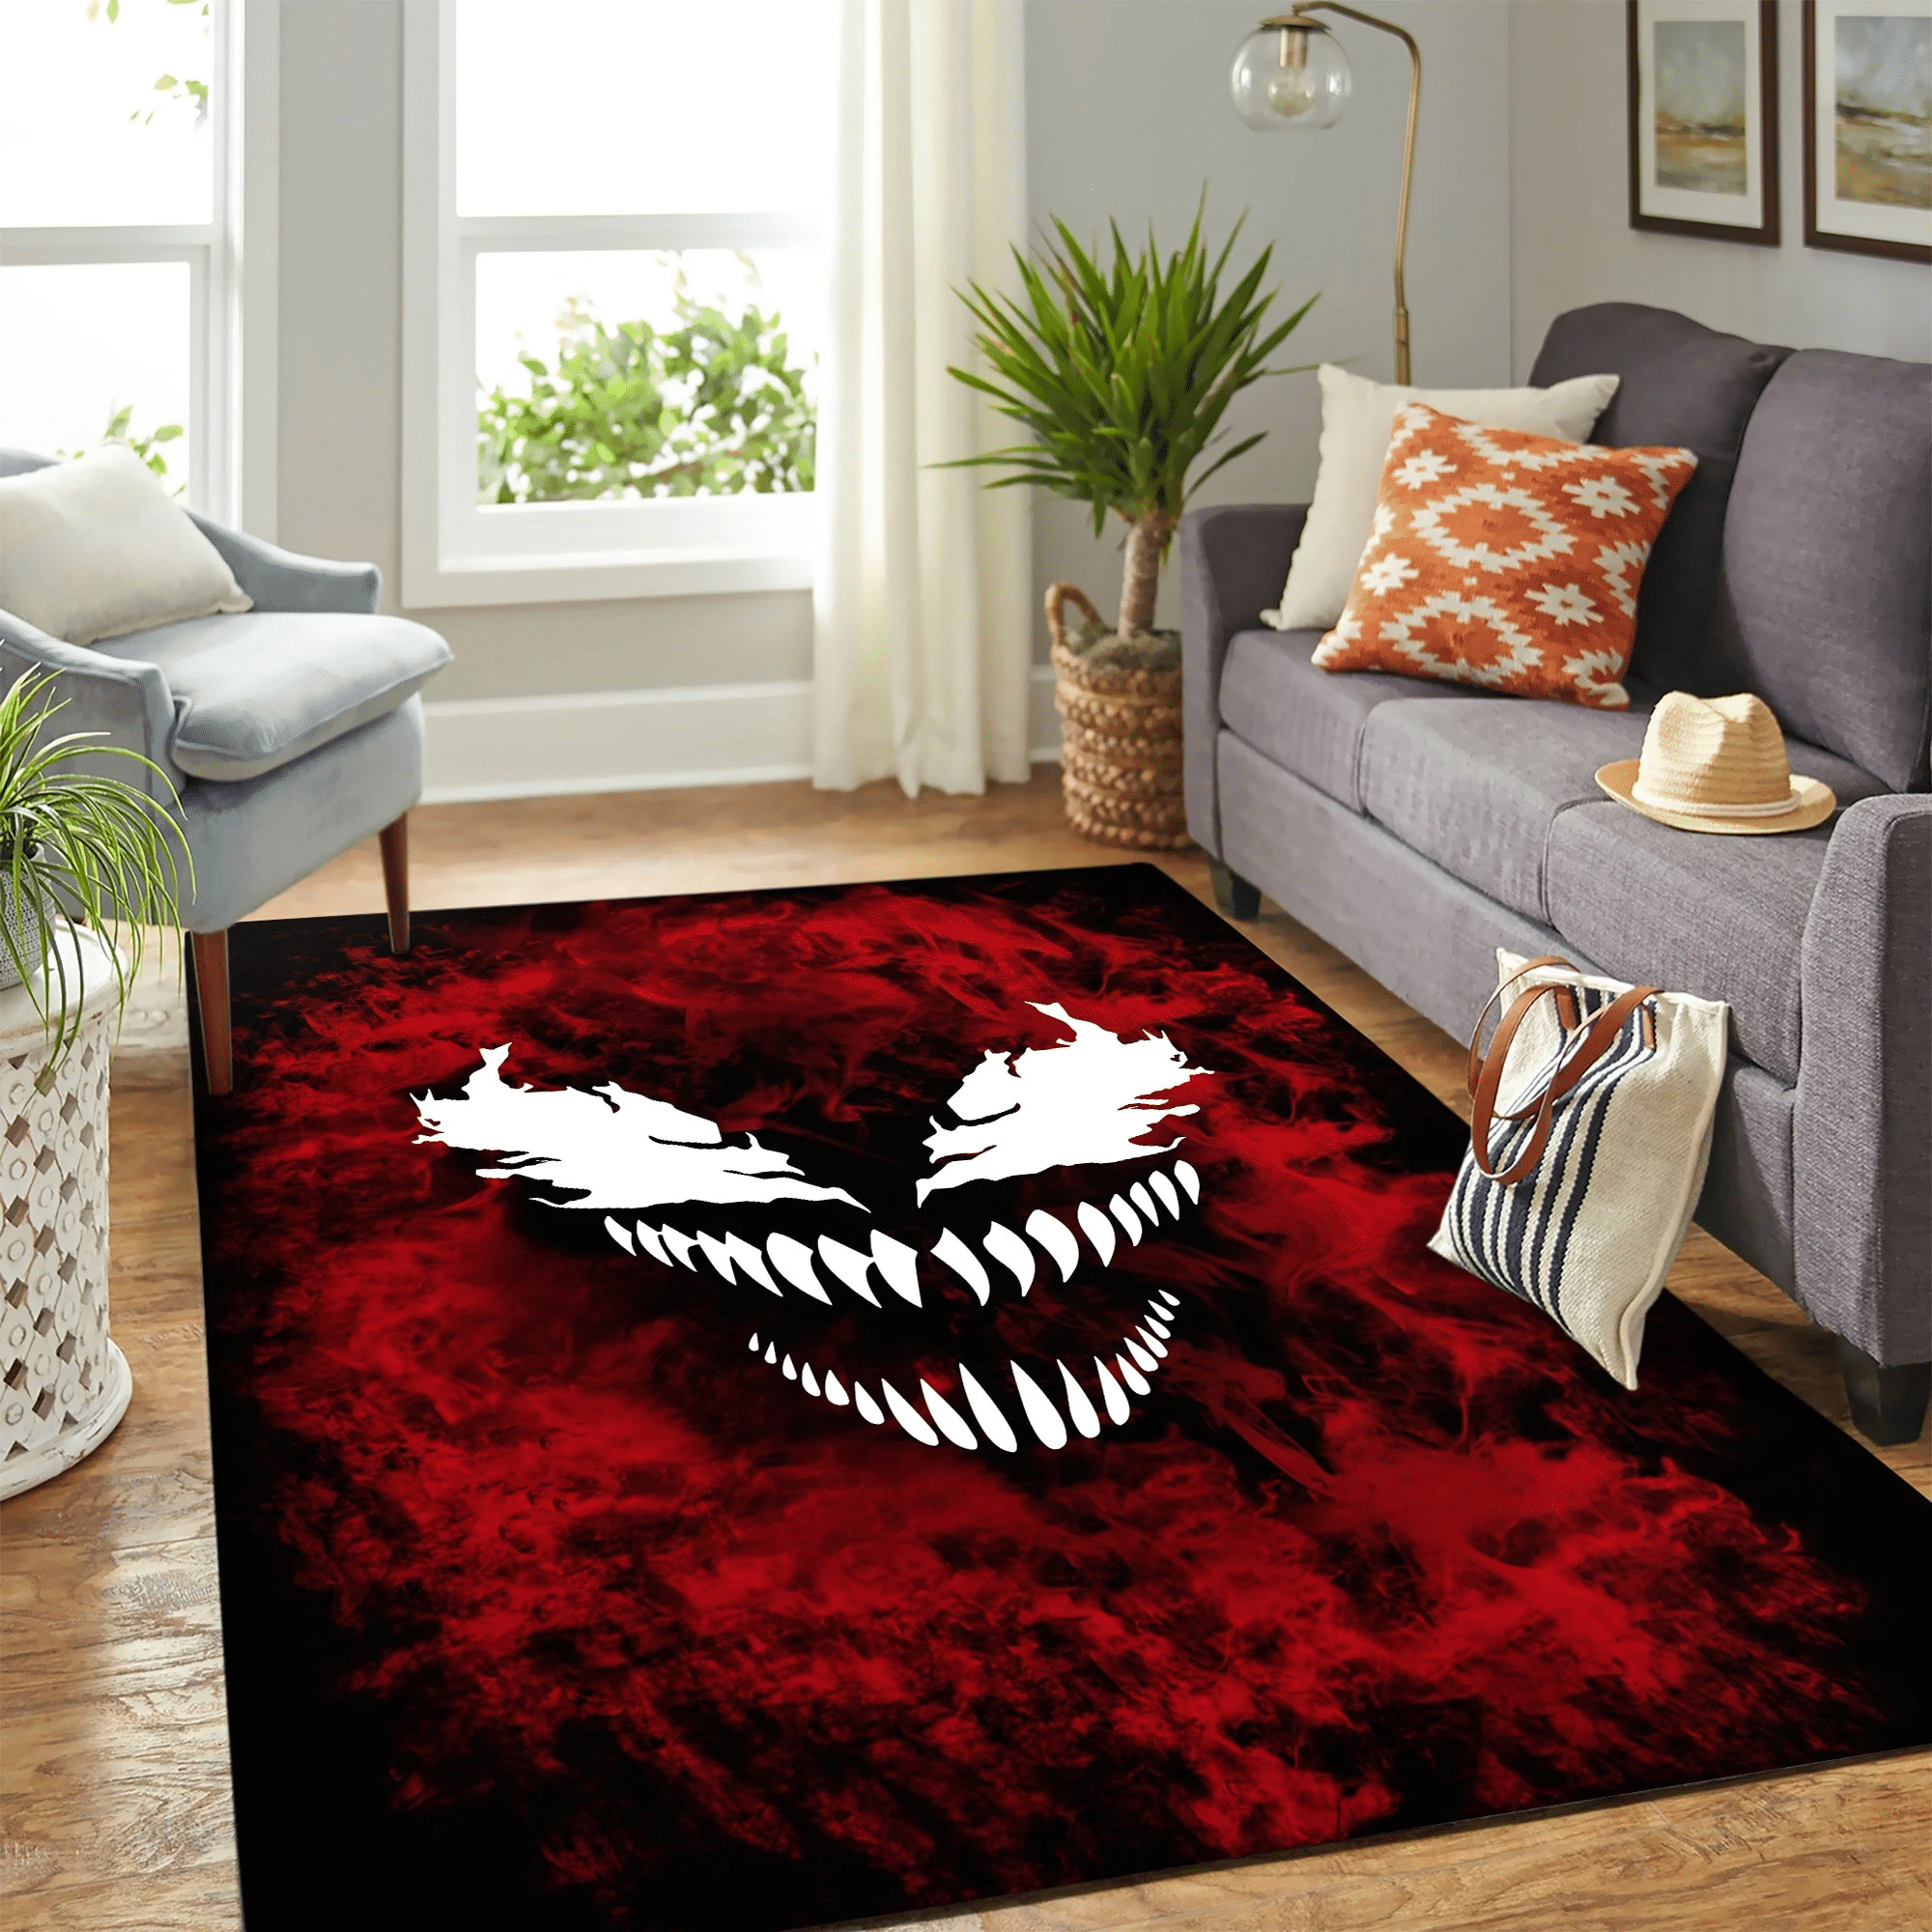 Venom Carpet Floor Area Rug Chrismas Gift - Indoor Outdoor Rugs